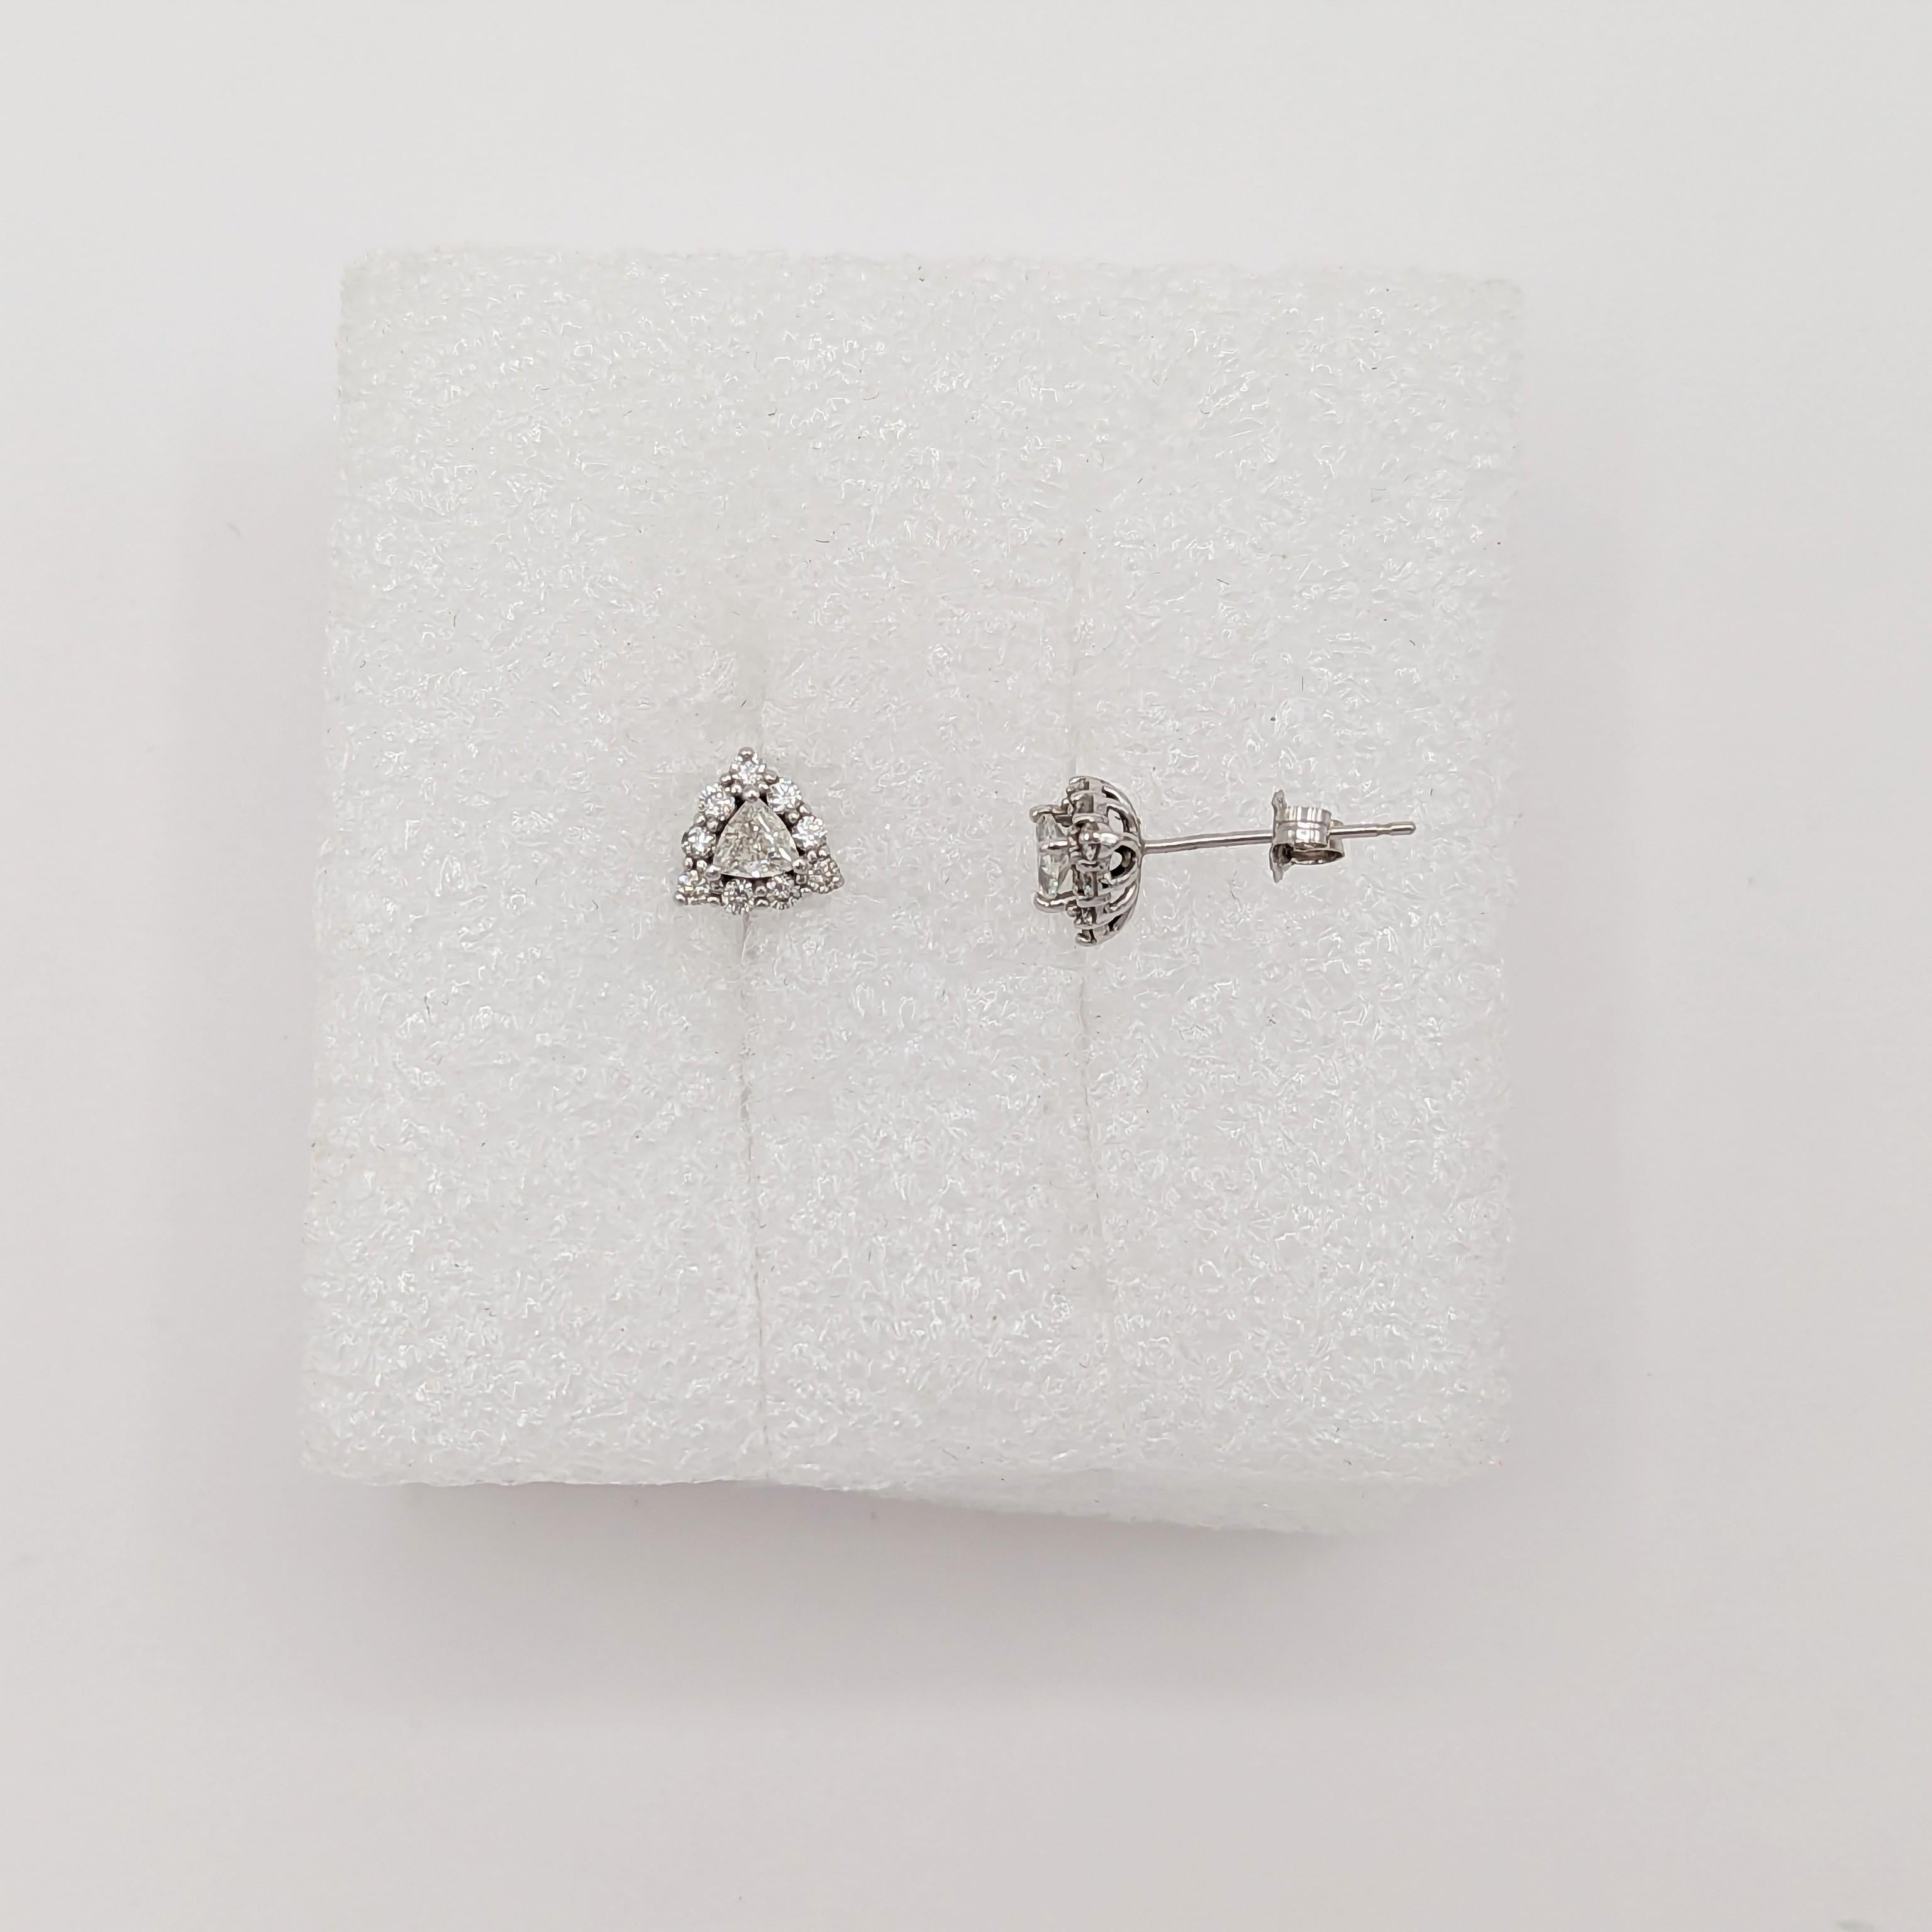 White Diamond Trillion Earring Studs in 14K White Gold For Sale 1